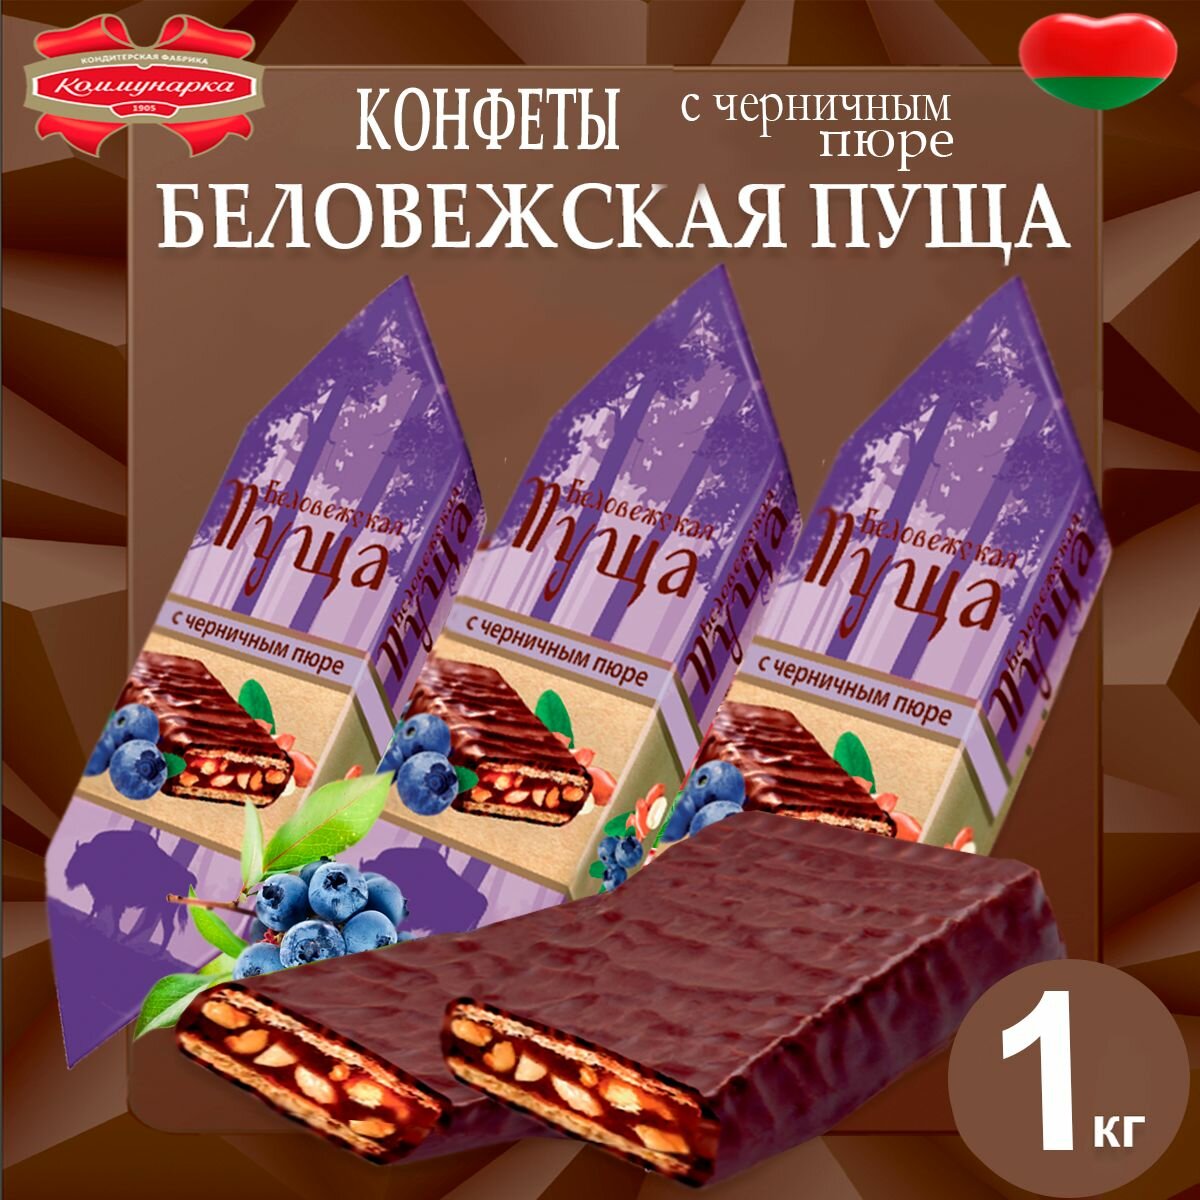 Конфеты Беловежская пуща с черничным пюре, 1020гр - фотография № 1